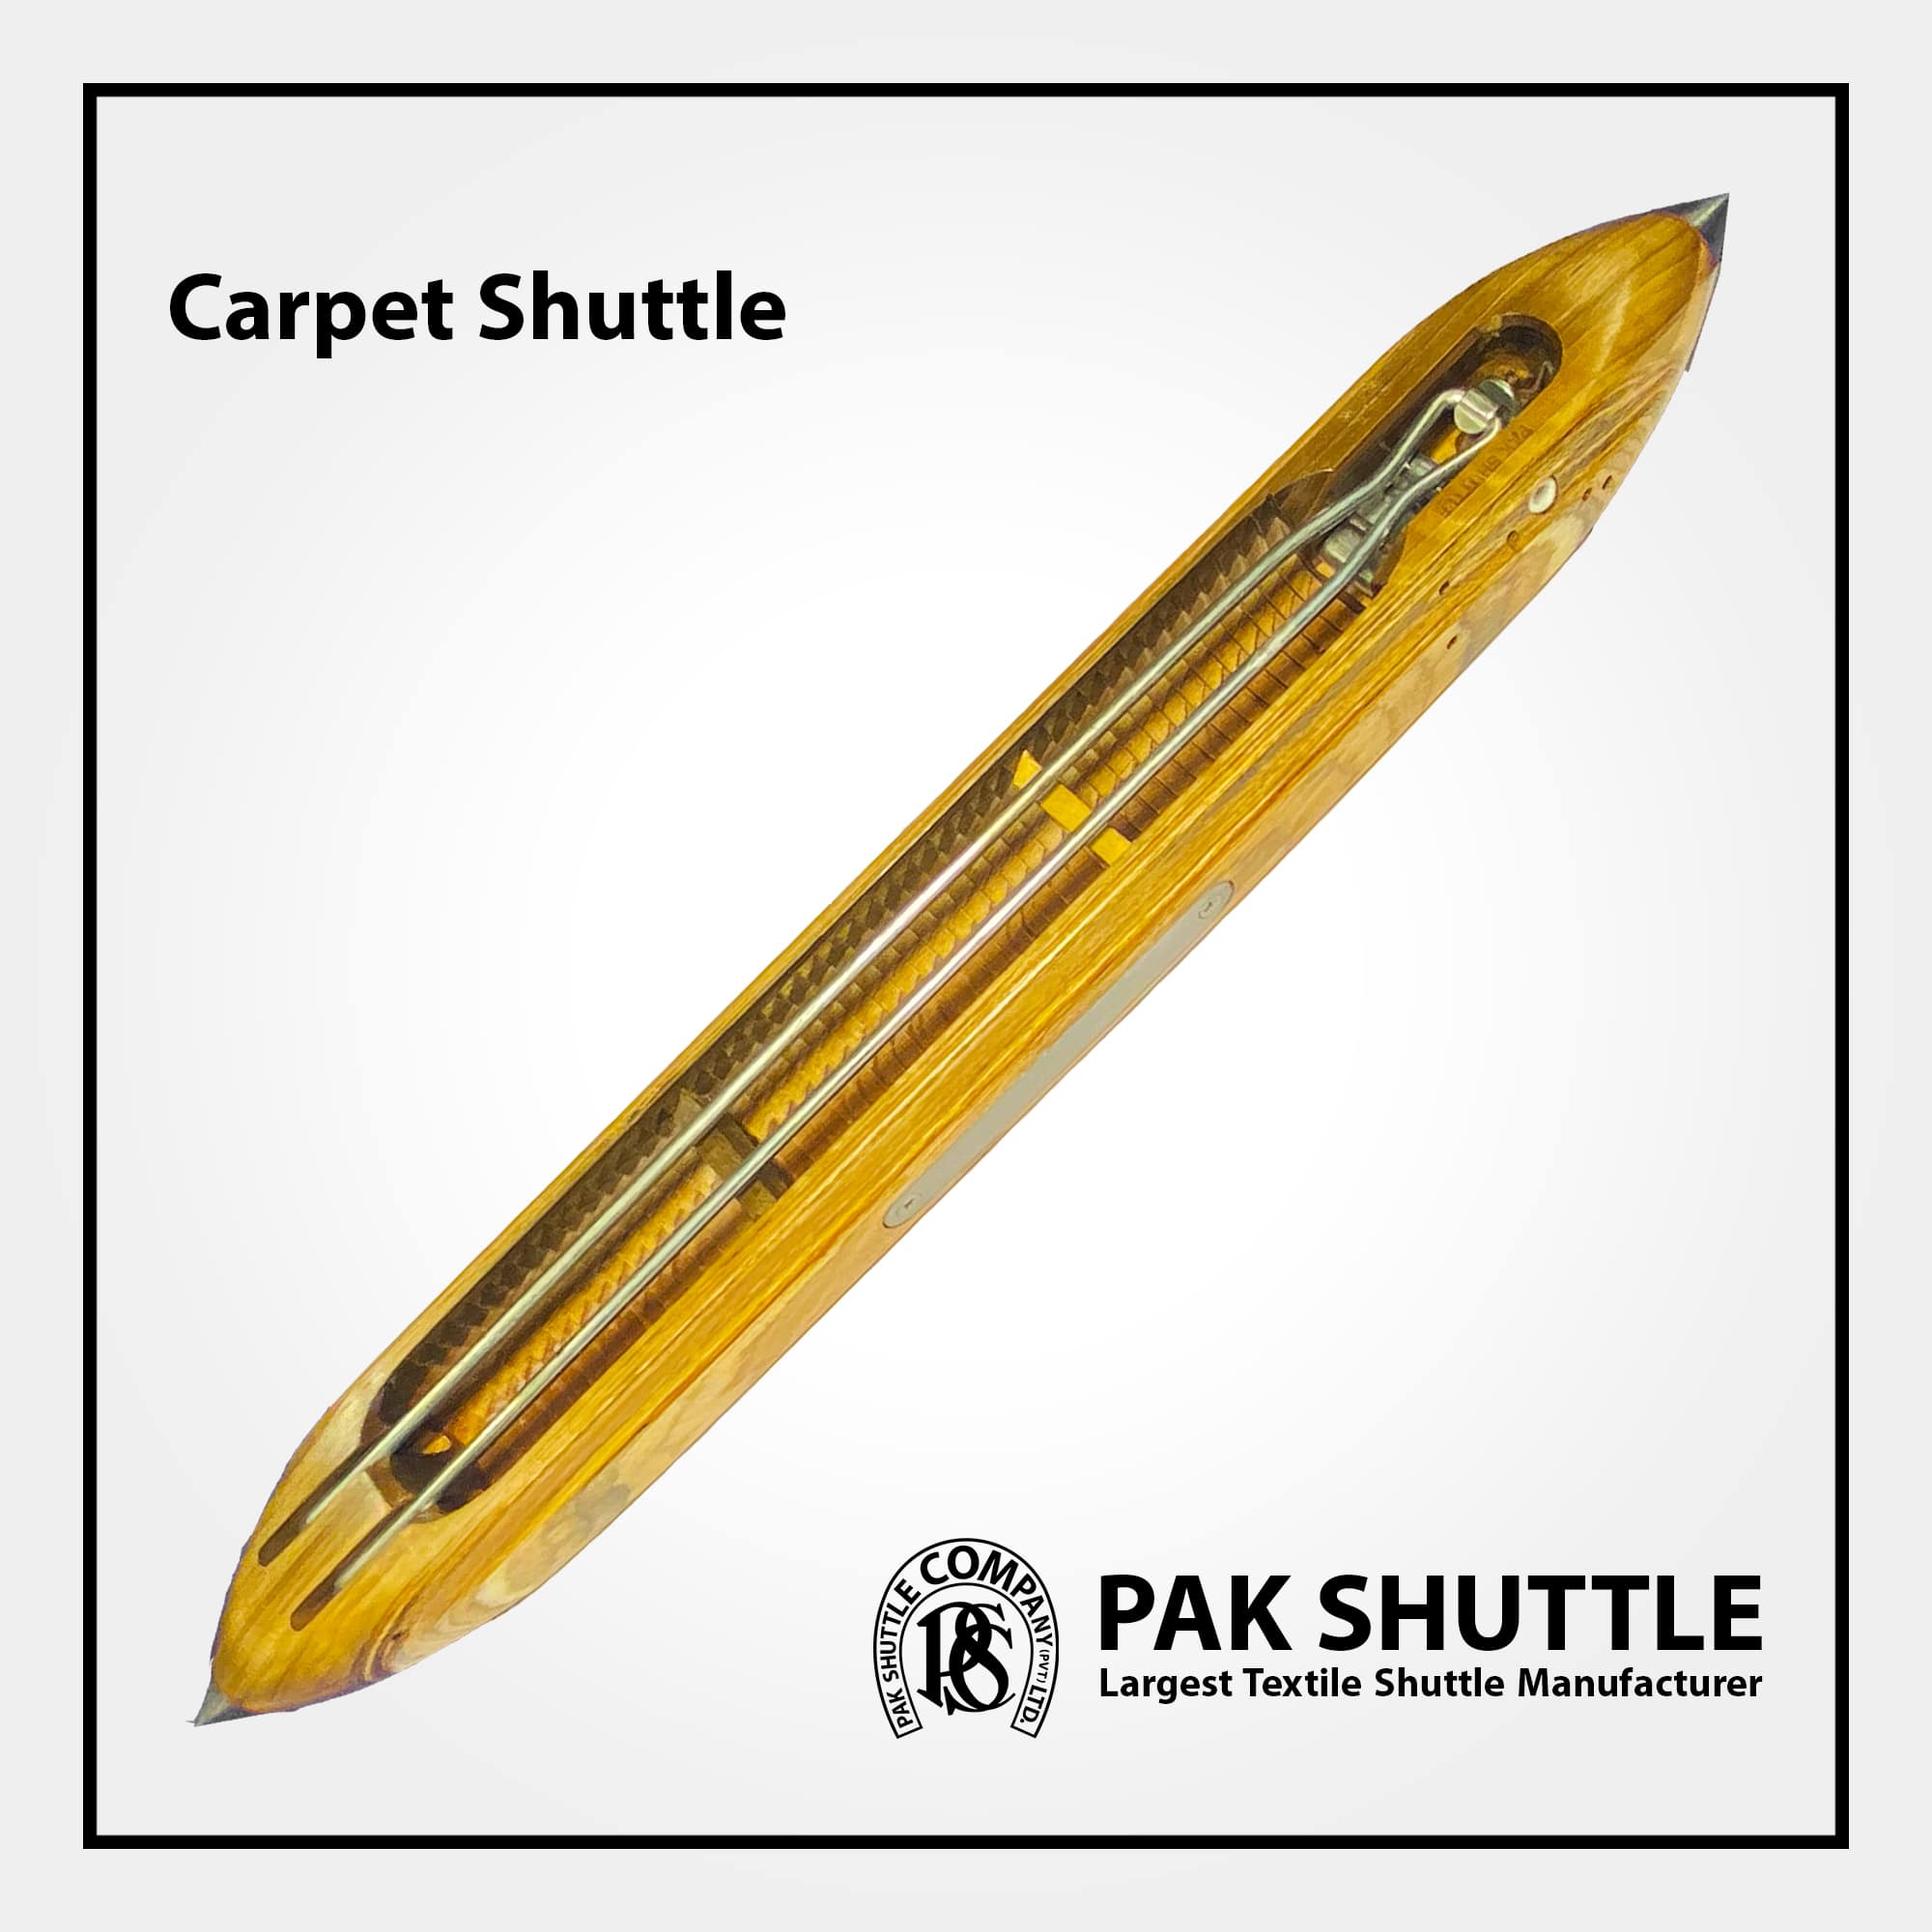 Carpet, Jute & Woolen Shuttle by Pak Shuttle Company Pvt Ltd.